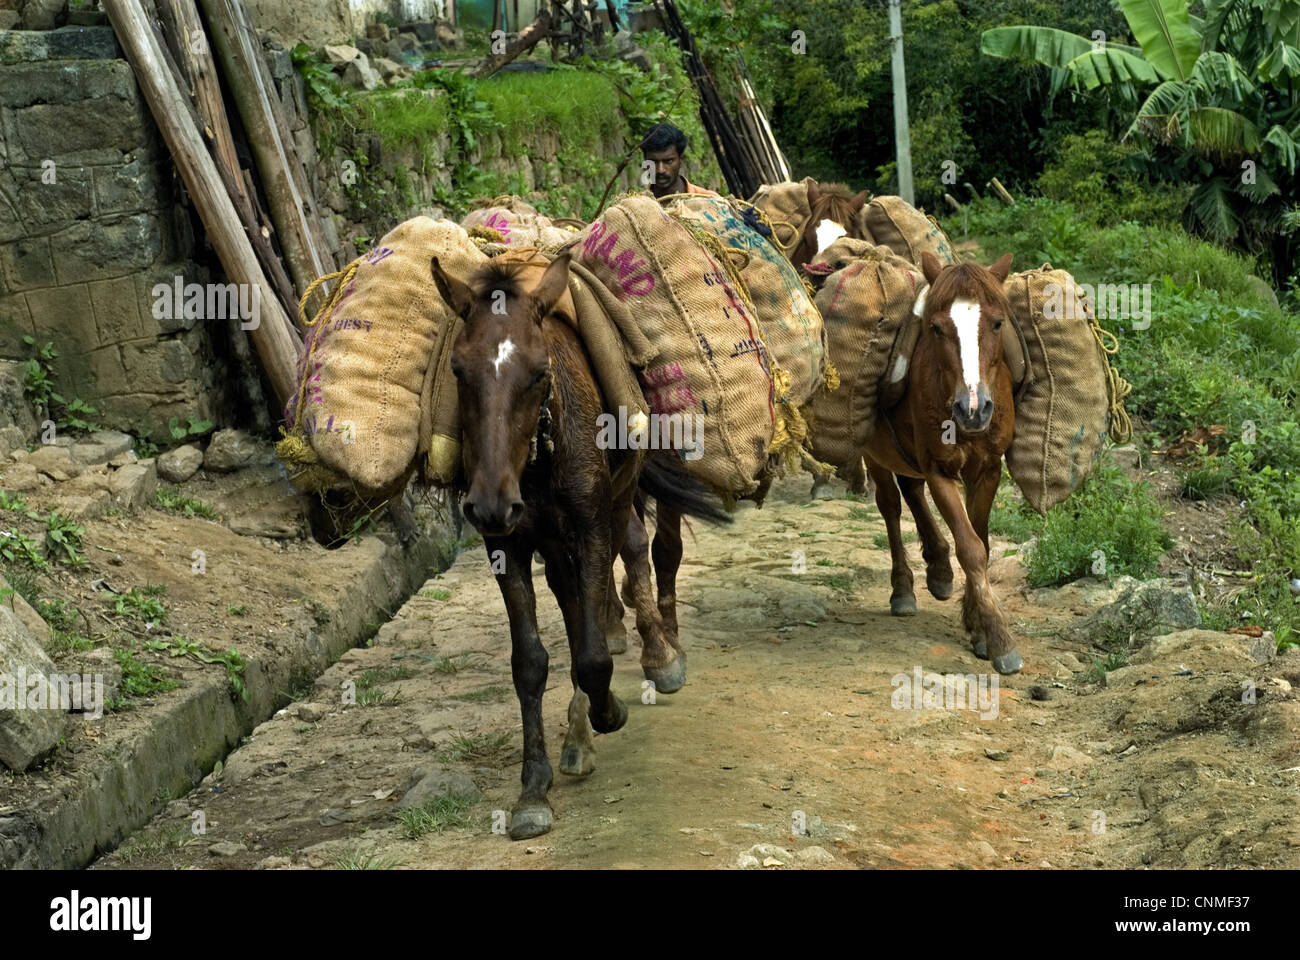 Los caballos cargados con sacos, llevando el cultivo cosechado, Vattavada, Western Ghats, Kerala, India Foto de stock